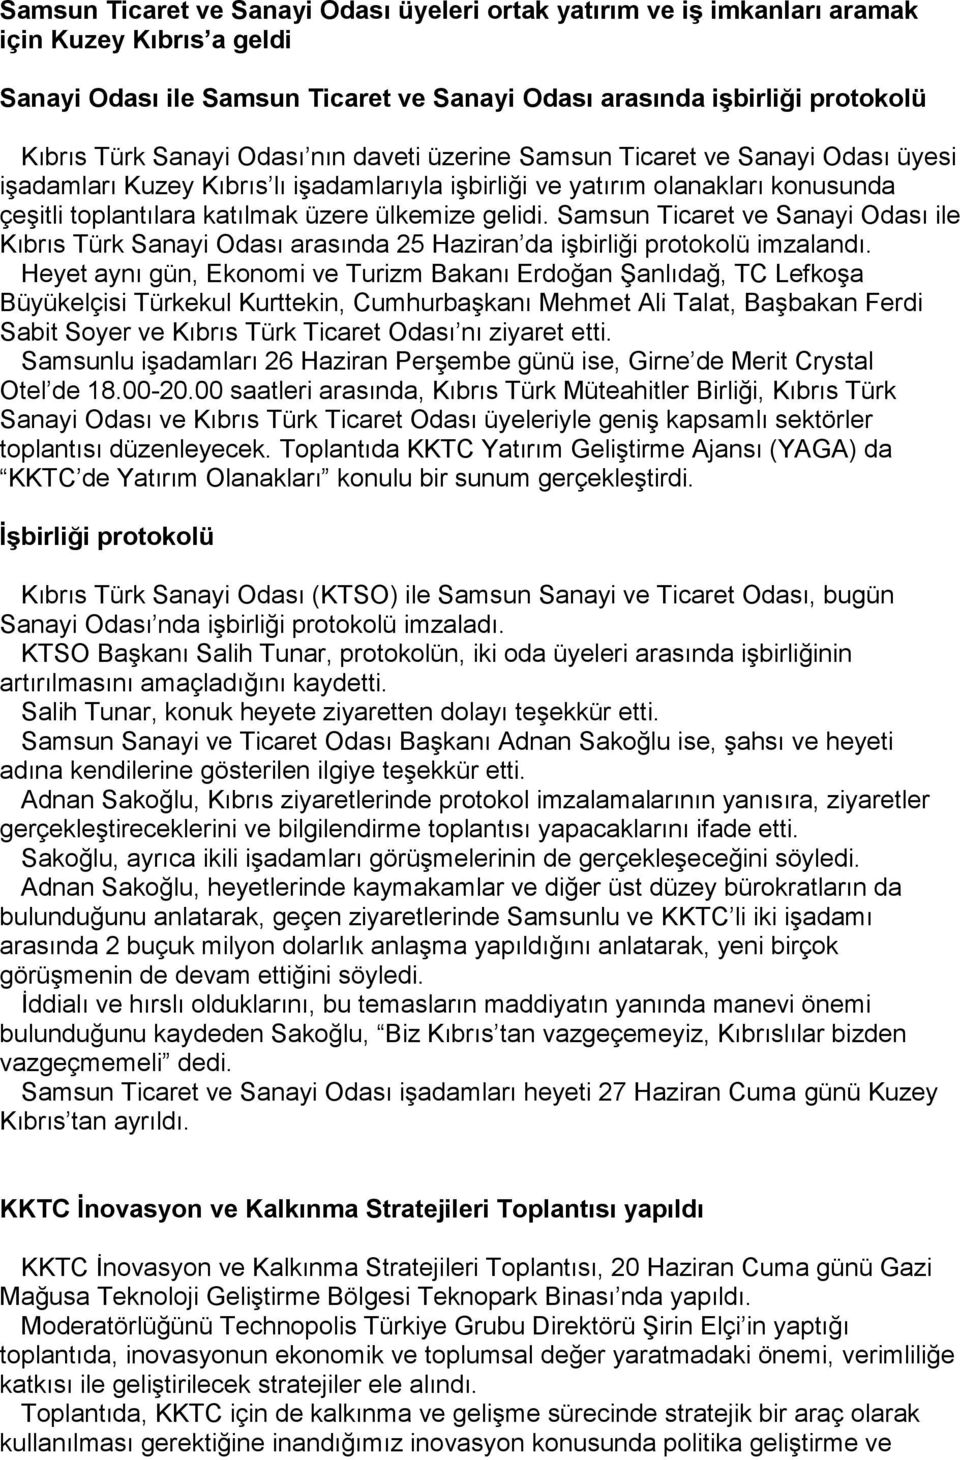 Samsun Ticaret ve Sanayi Odası ile Kıbrıs Türk Sanayi Odası arasında 25 Haziran da işbirliği protokolü imzalandı.